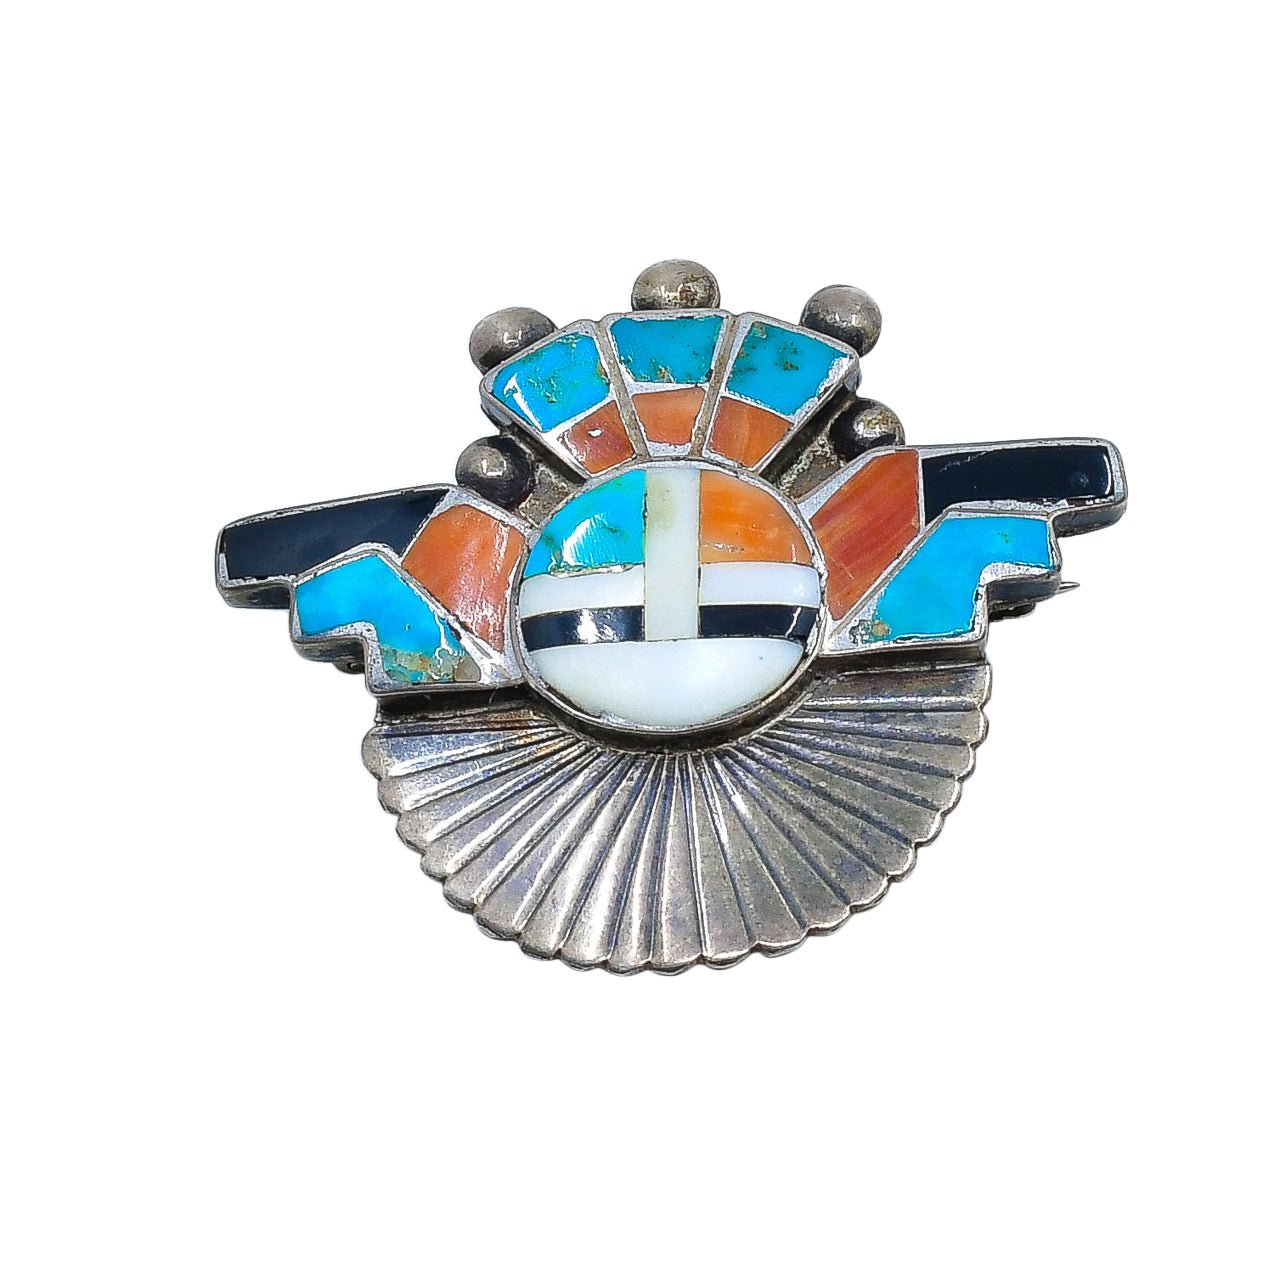 Vintage Zuni Sun Katsina Pin Pendant and Earring Set - Turquoise & Tufa